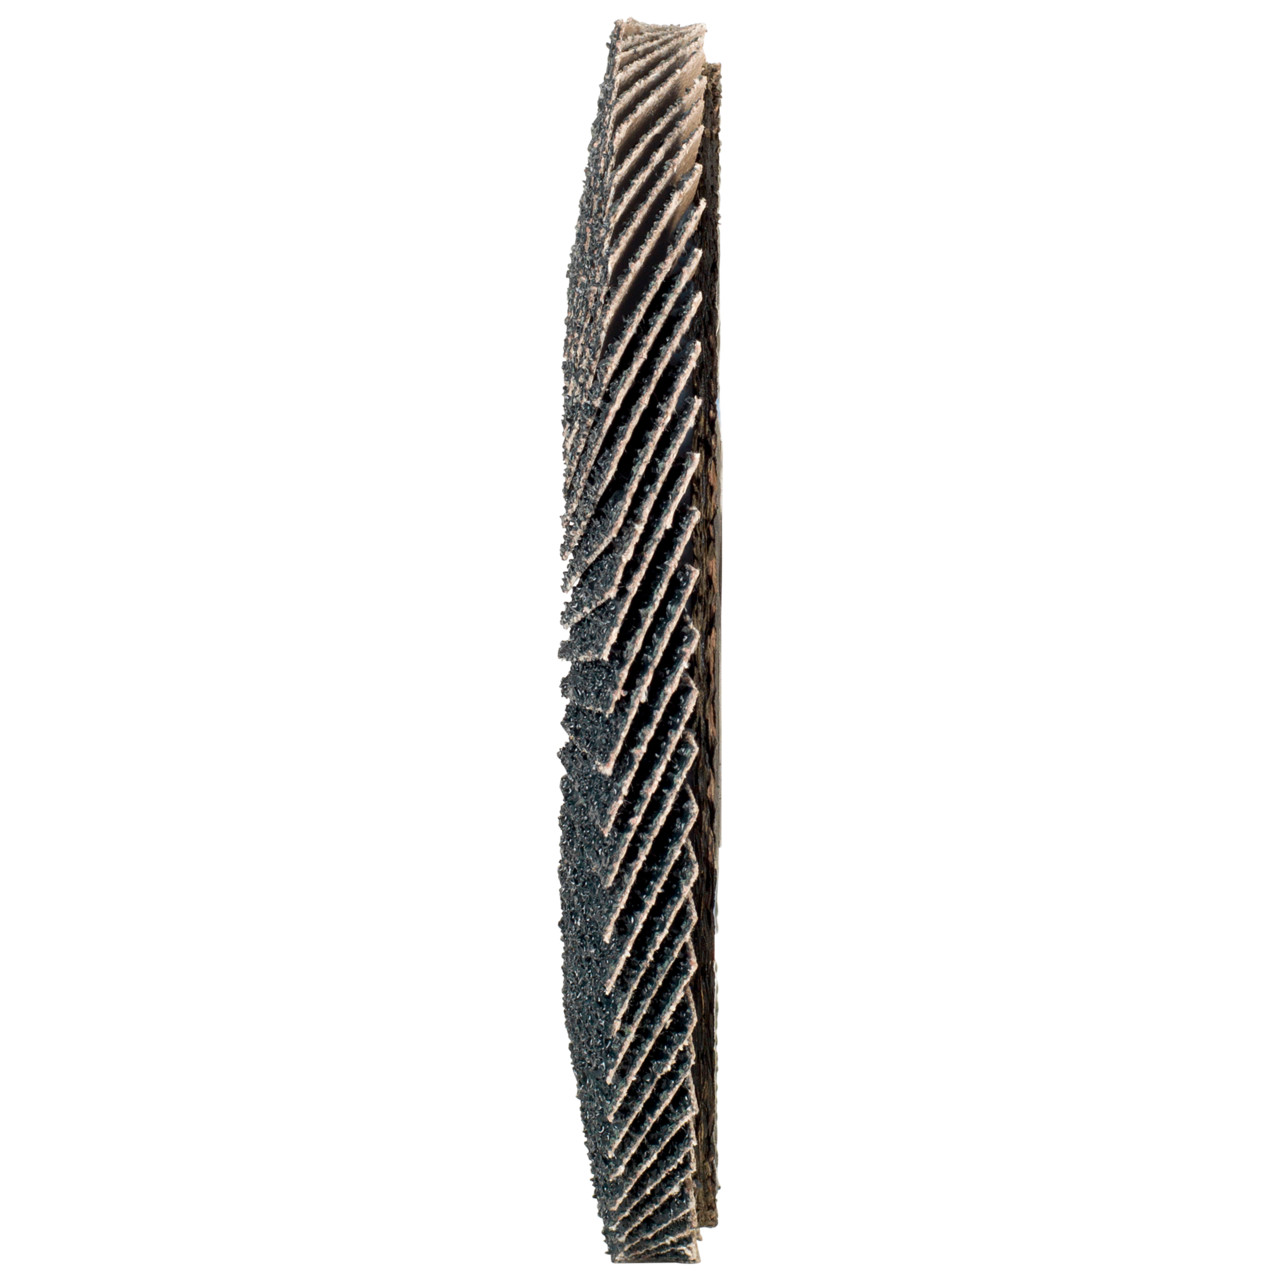 TYROLIT Fächerscheibe DxH 125x22,2 2in1 für Stahl & Edelstahl, P40, Form: 27A - gekröpfte Ausführung (Glasfaserträgerkörperausführung), Art. 668663